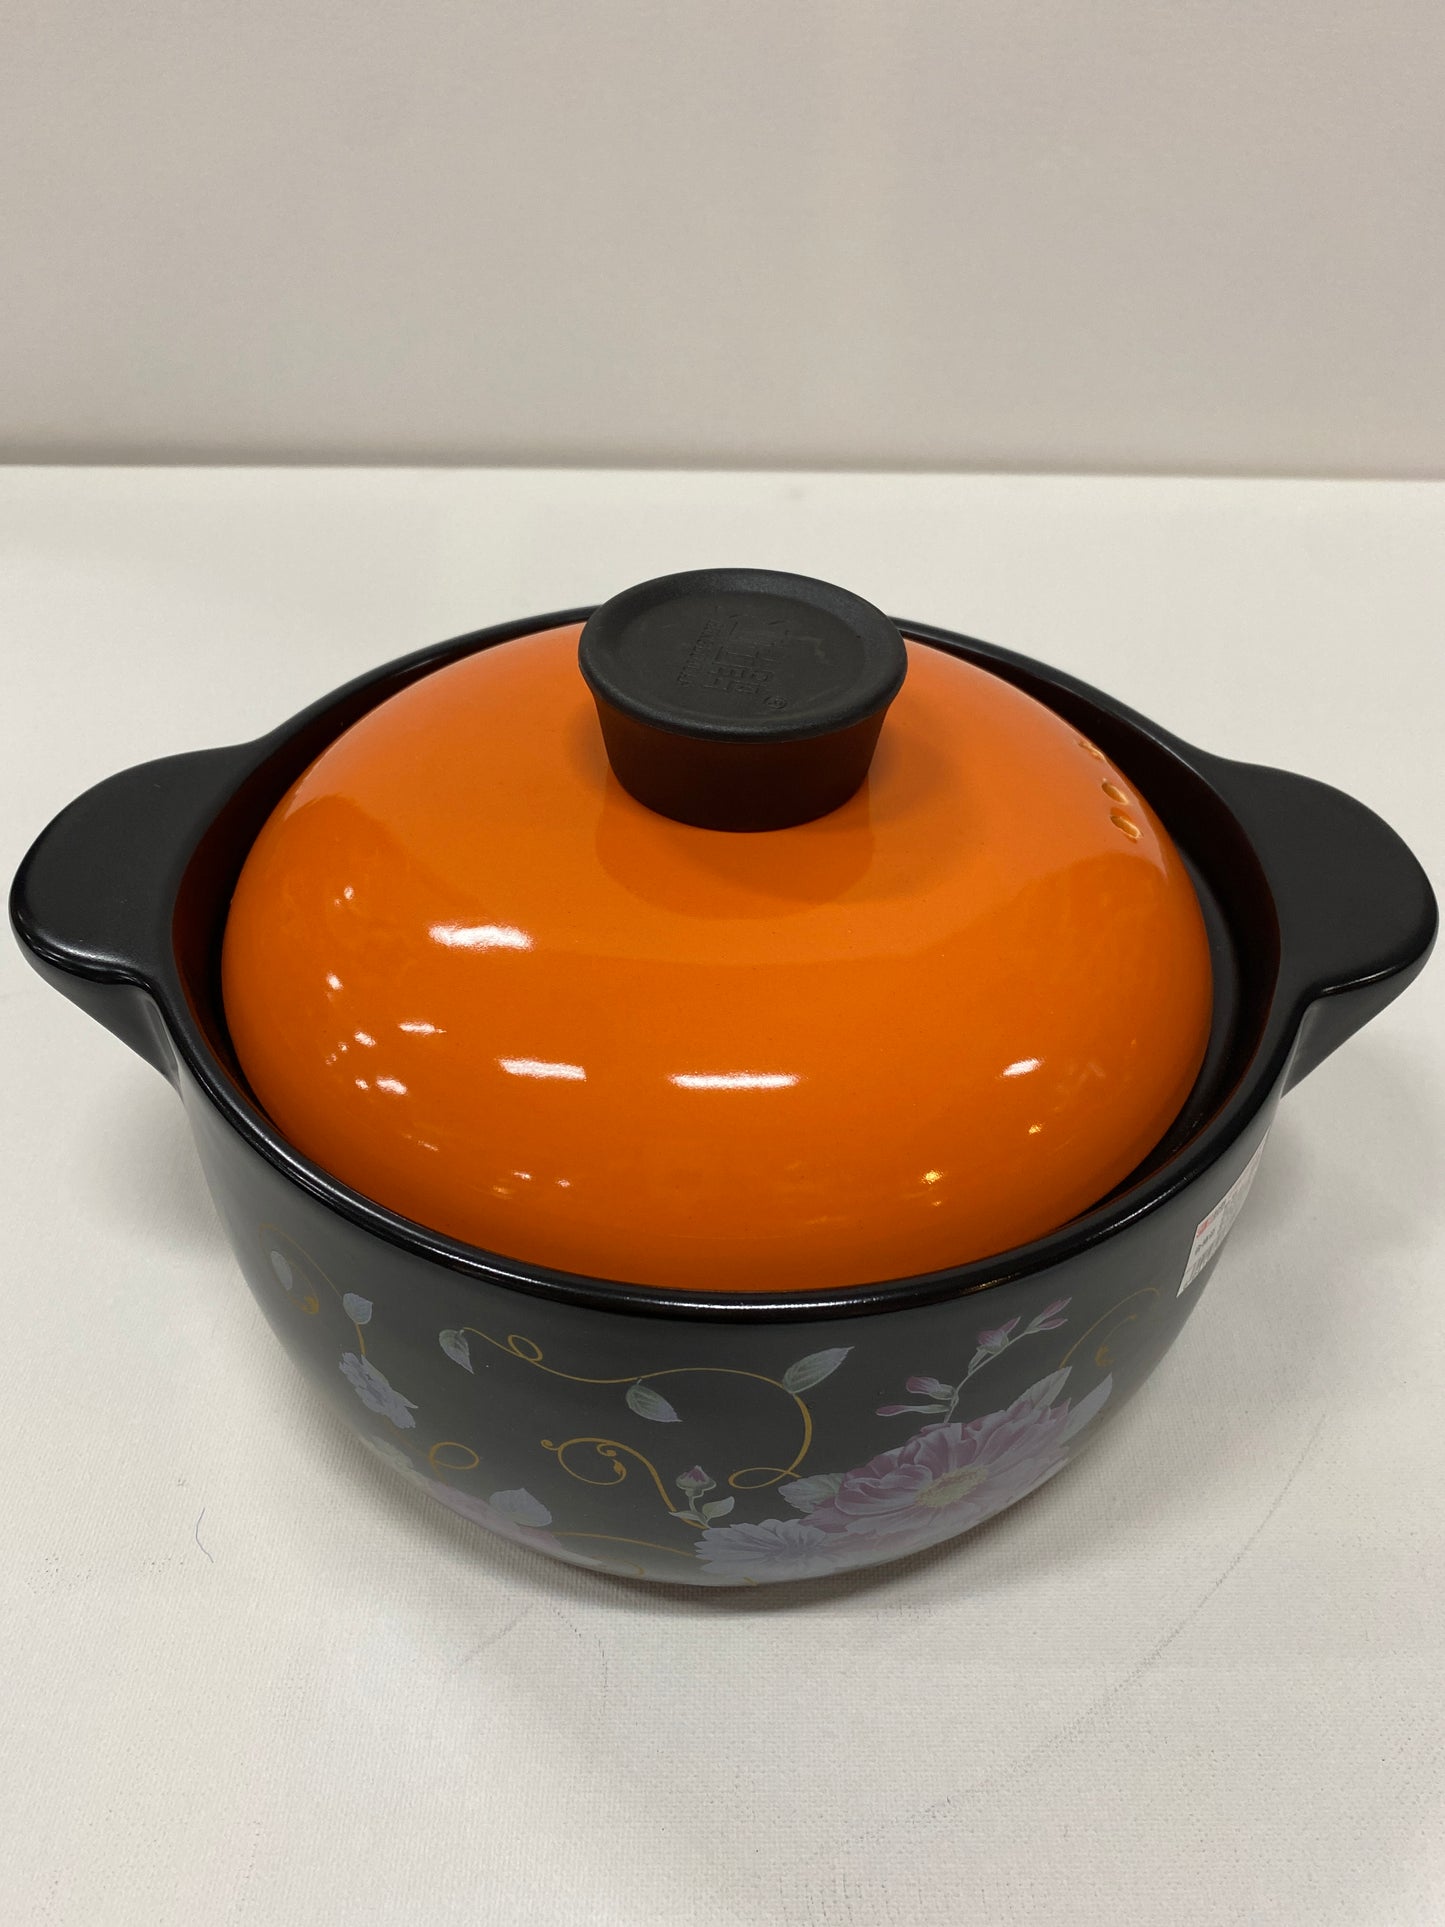 Ceramic cooking pot 2500ml. Cpc2500s